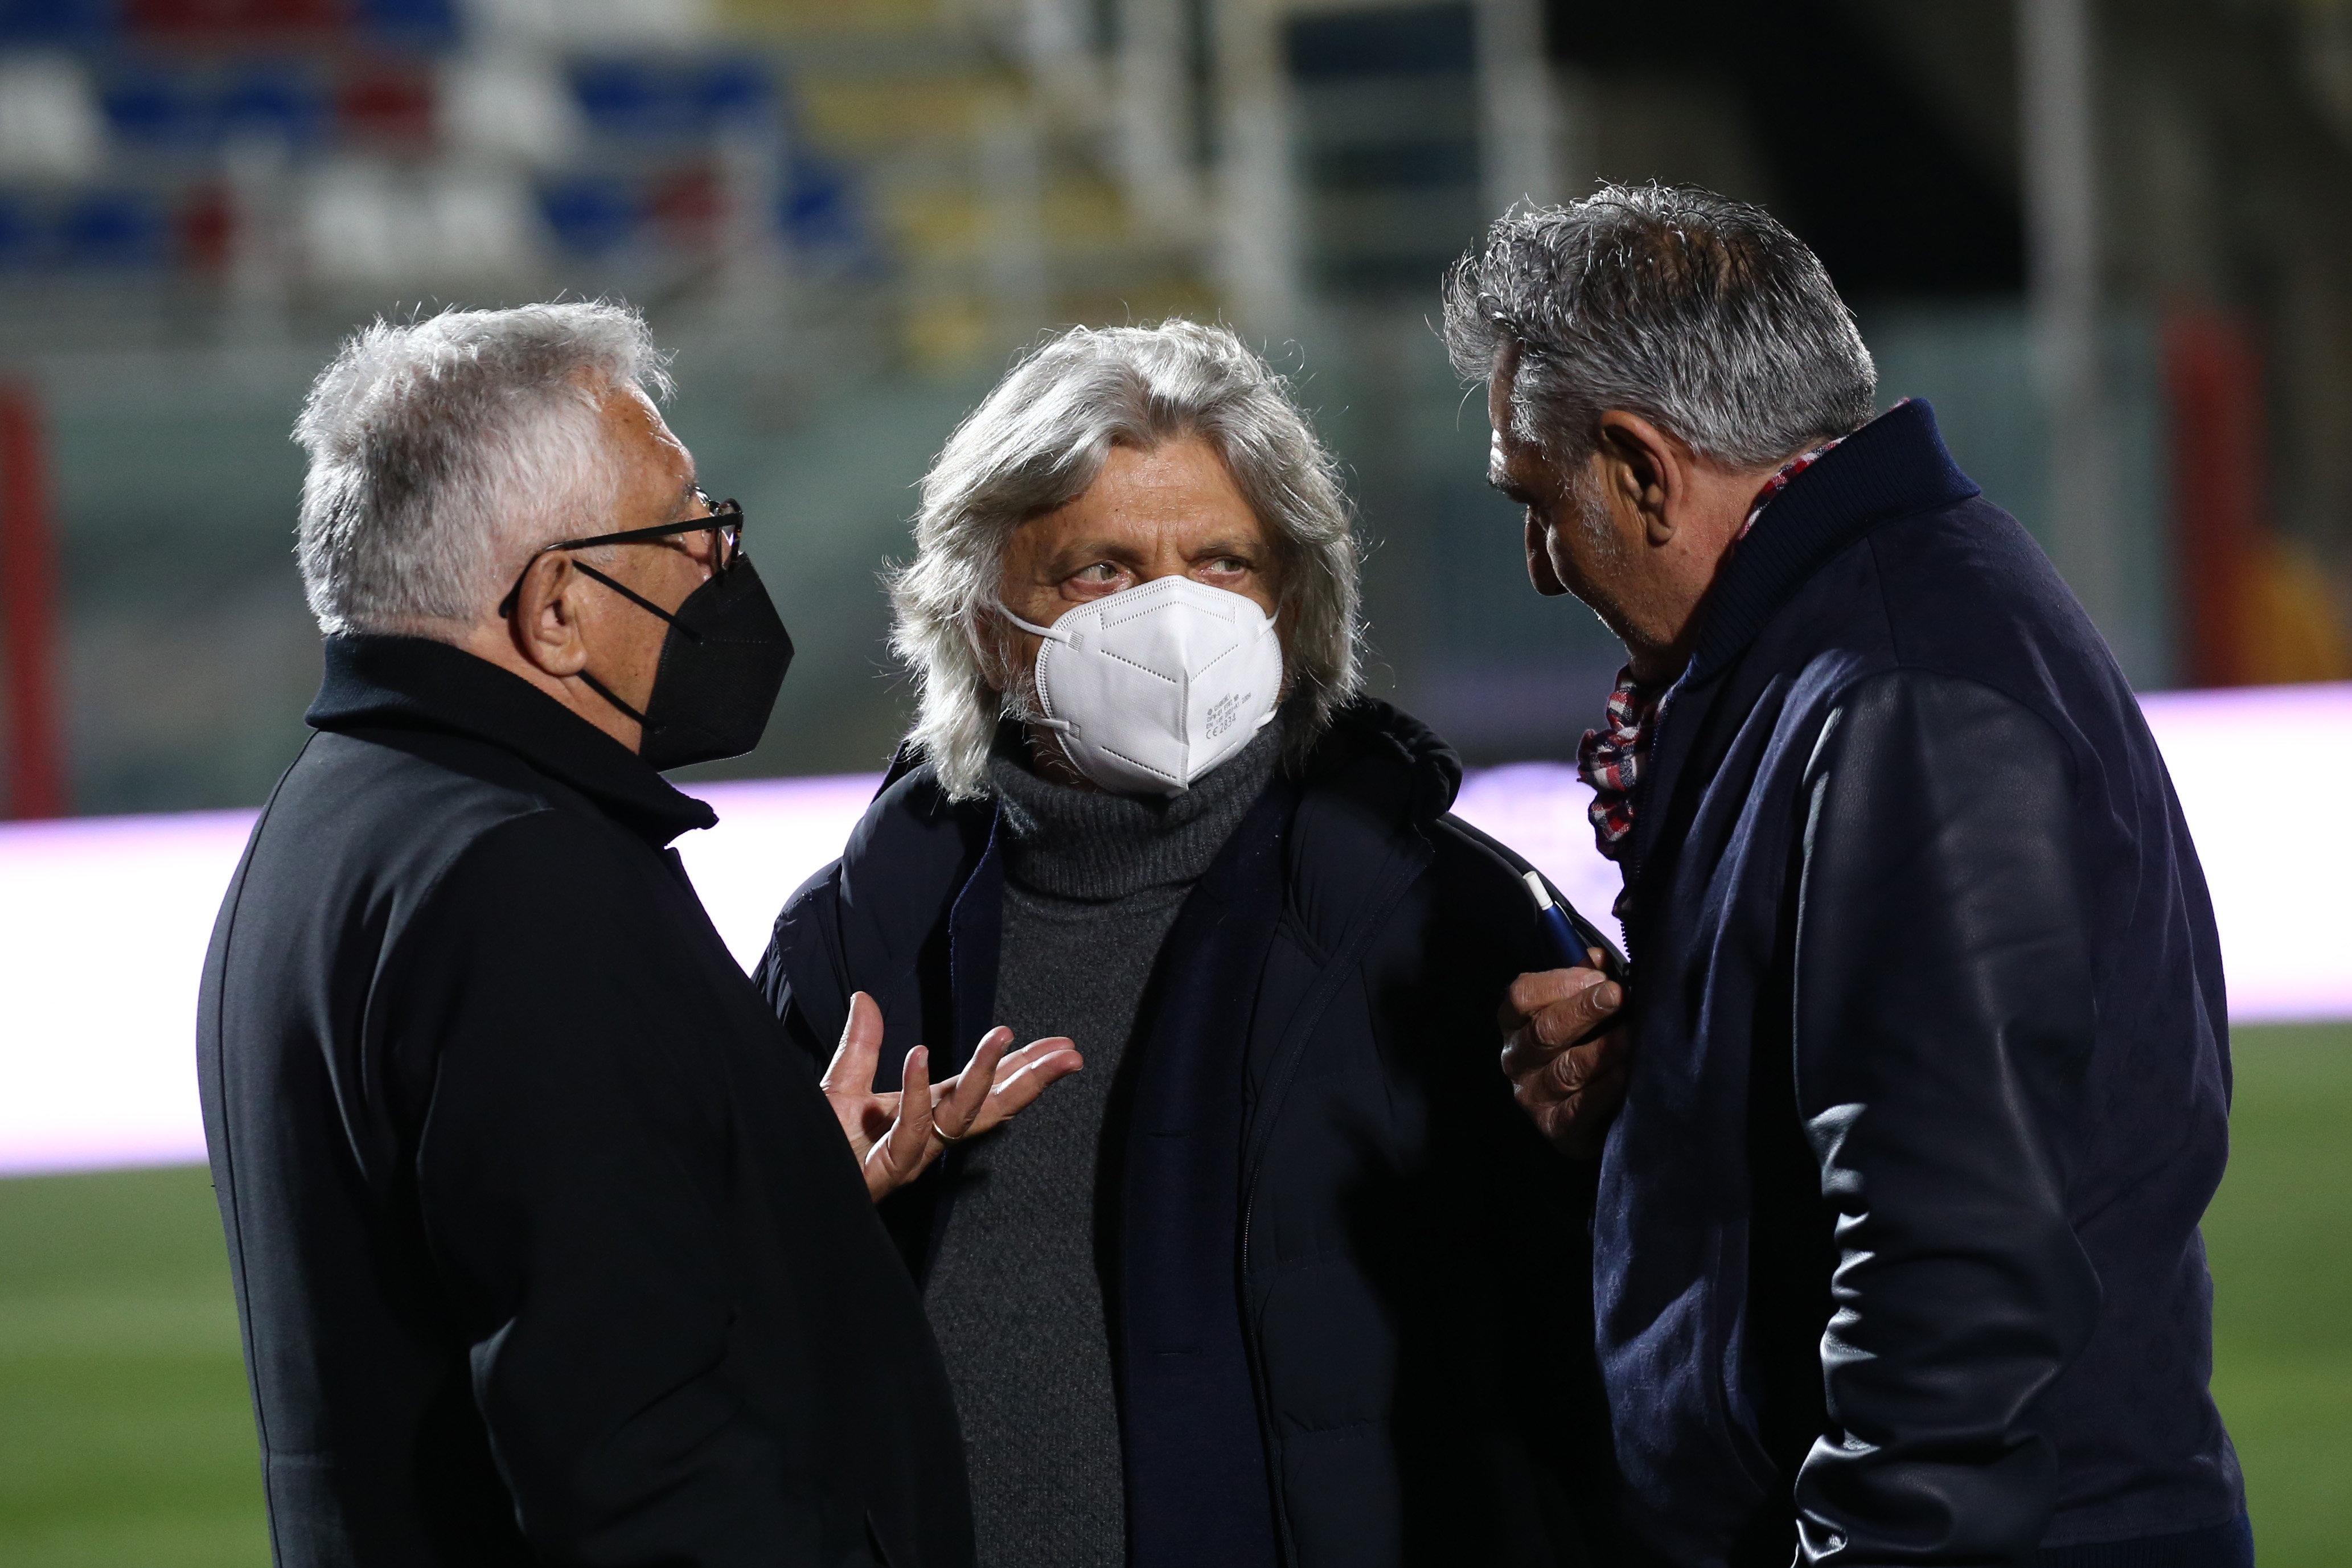 Patronul unui club de tradiție din Serie A face dezvăluiri: Am primit patru cartușe acasă. Voiau să mă ucidă